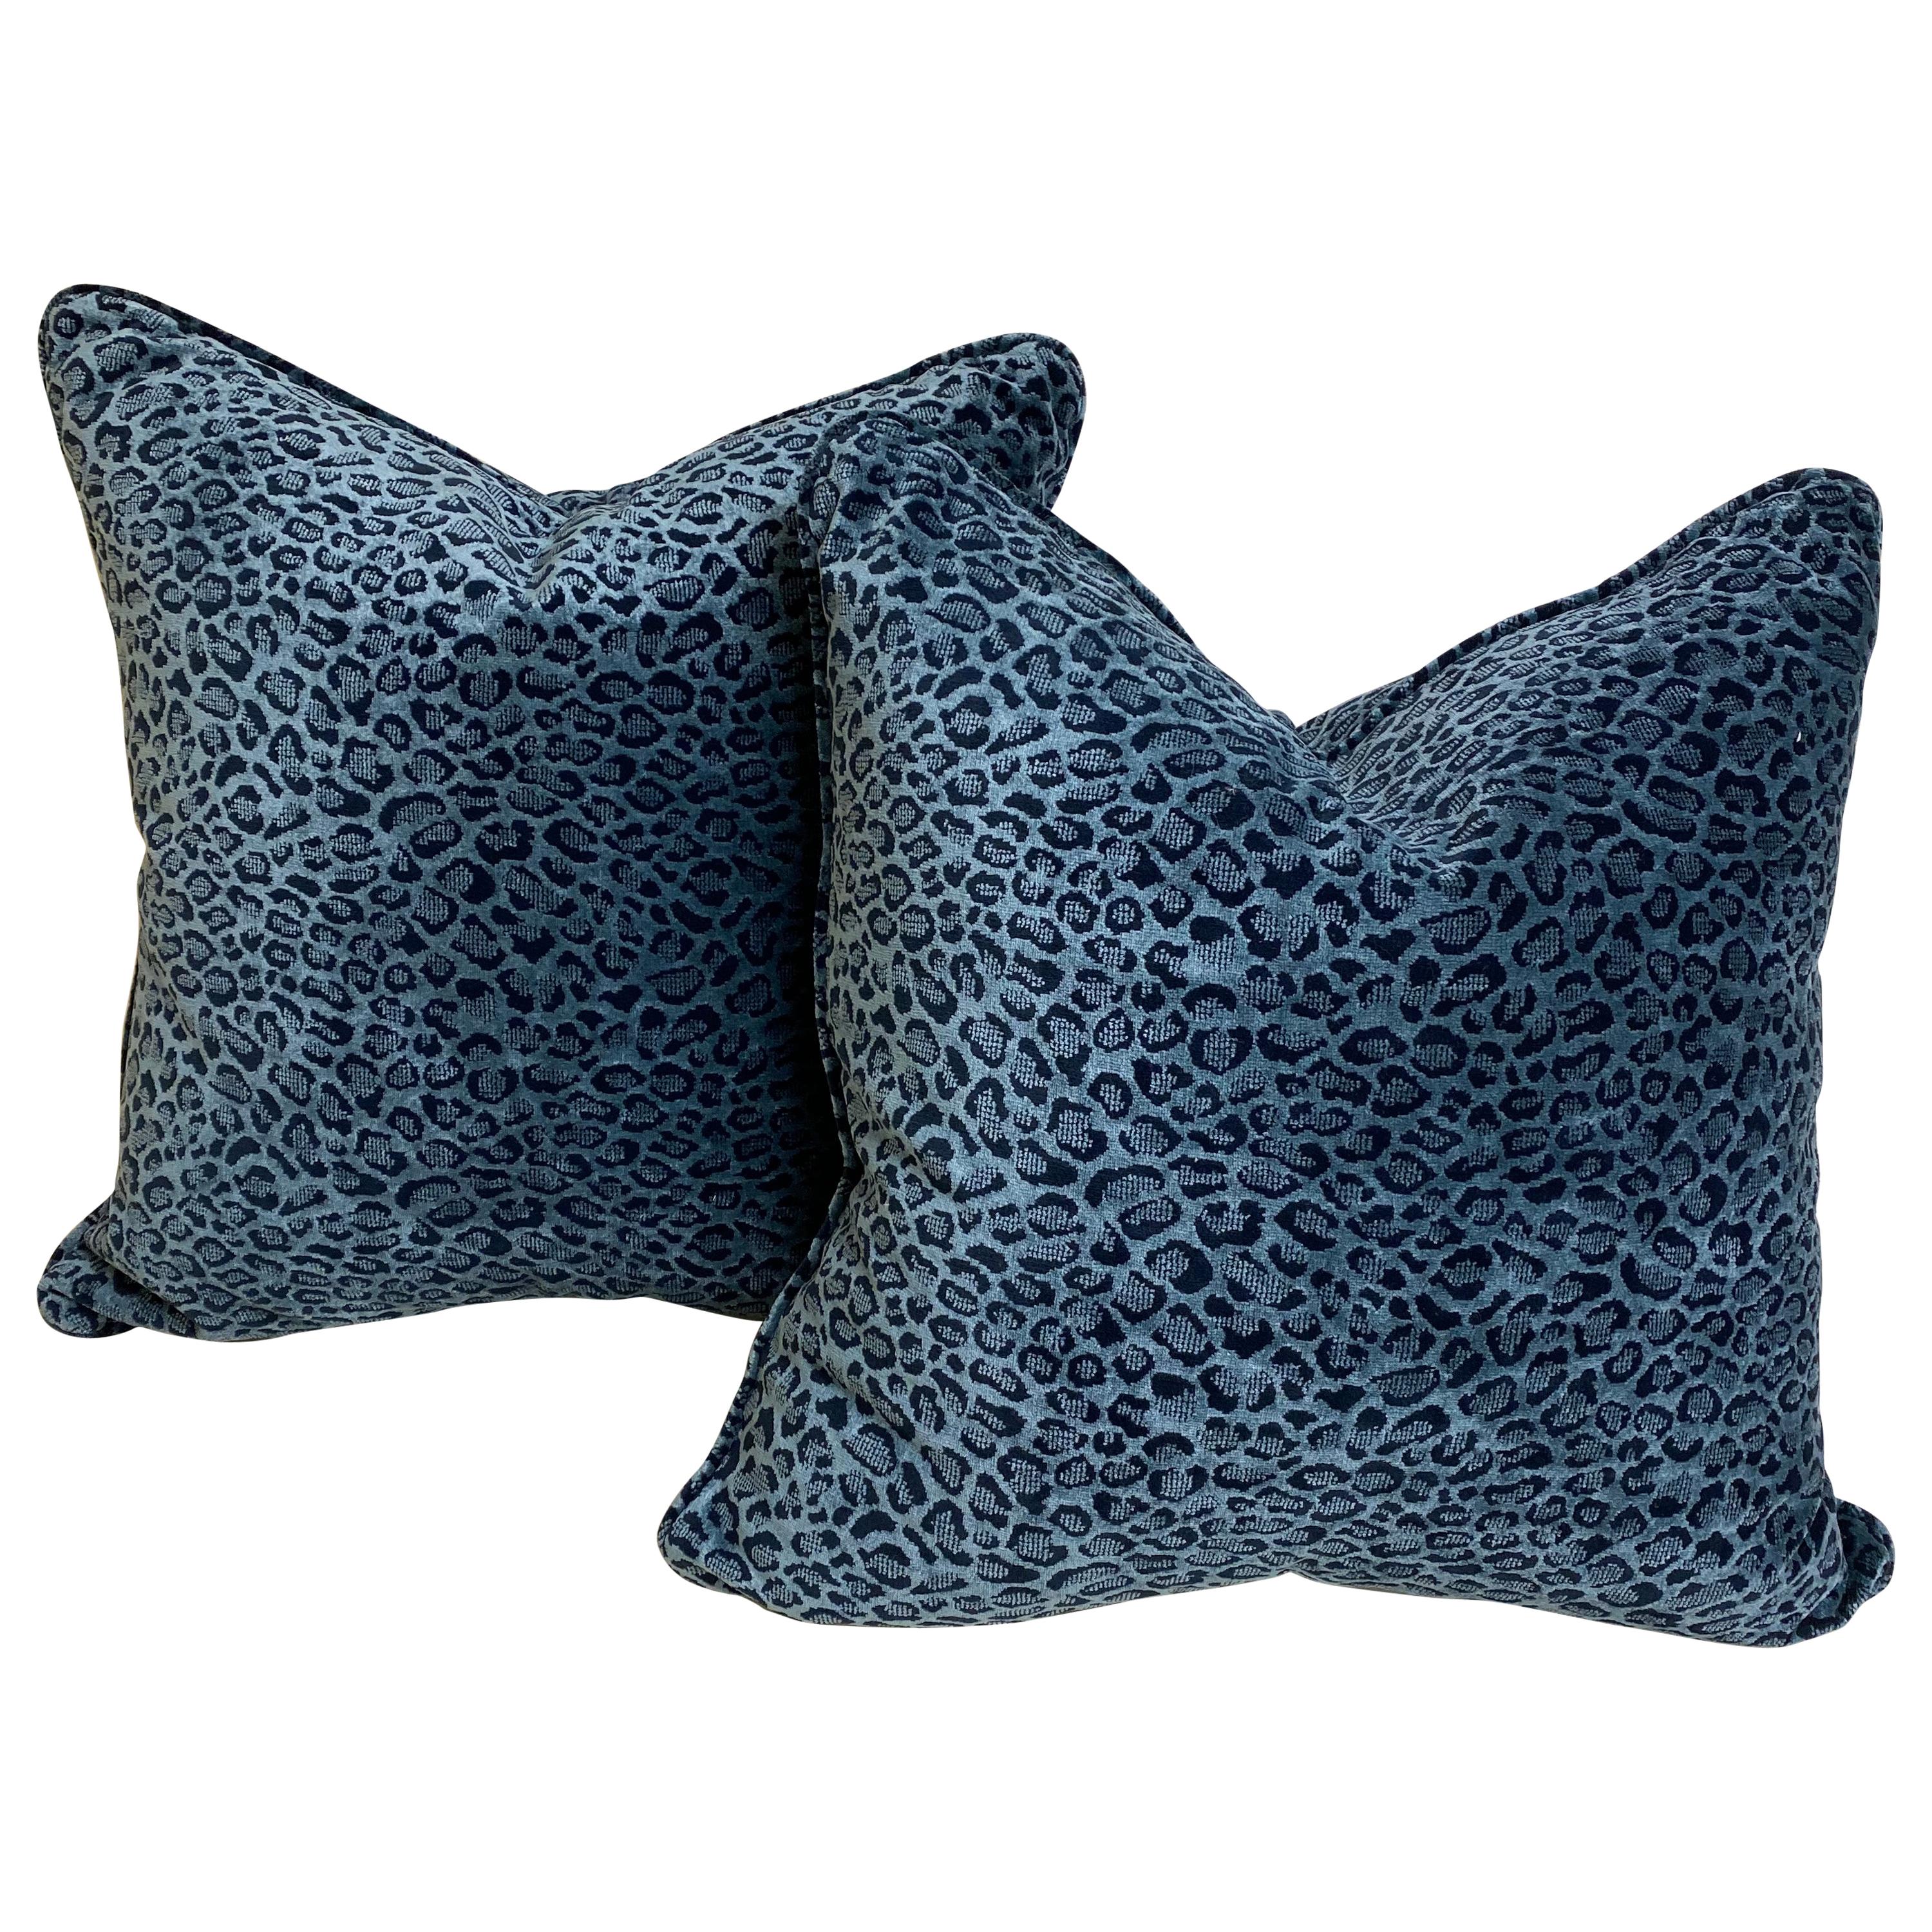 Pair of Blue Animal Print Velvet Cushions